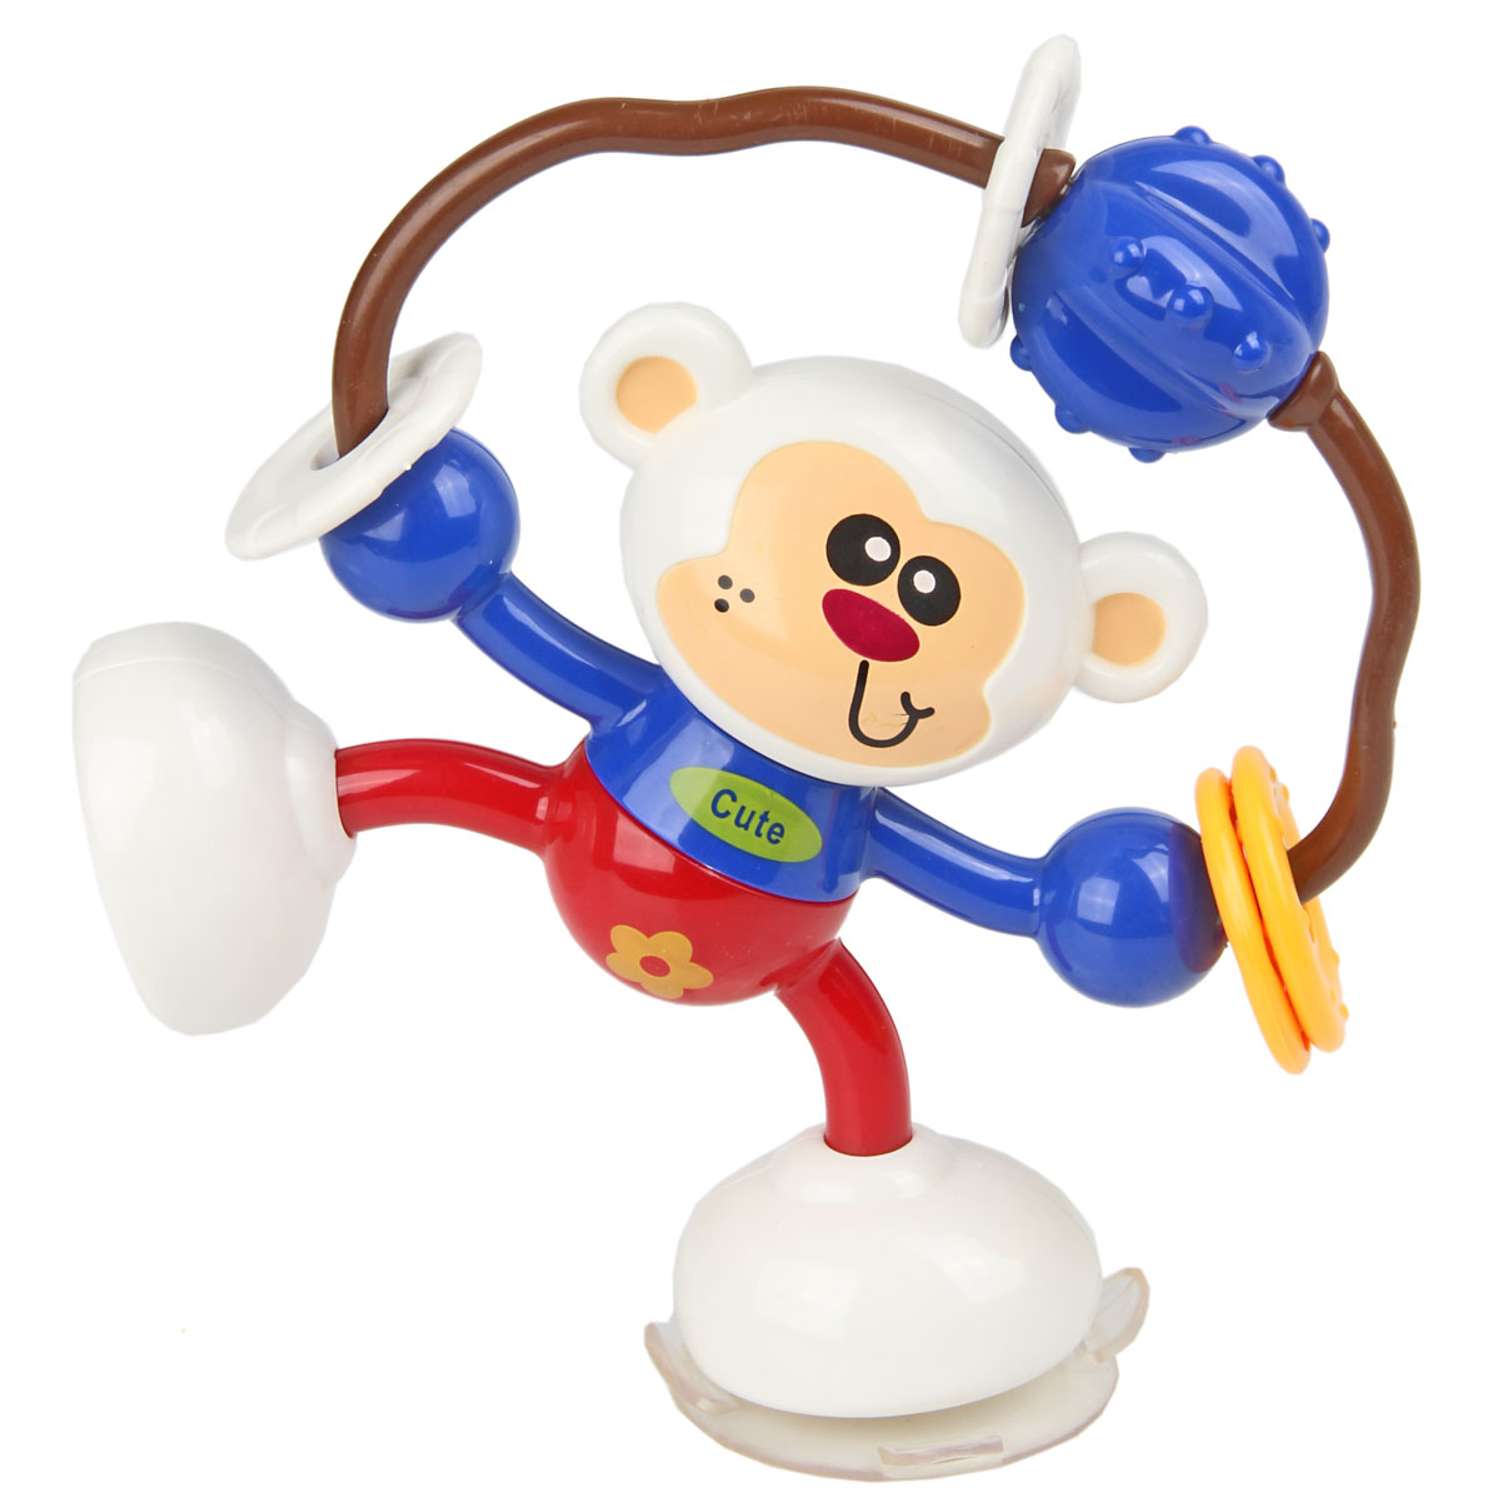 Игрушка крутилка. Развивающая игрушка Shantou Gepai обезьянка 58035. Погремушка синяя обезьяна. Крутилка "обезьянка", синяя.